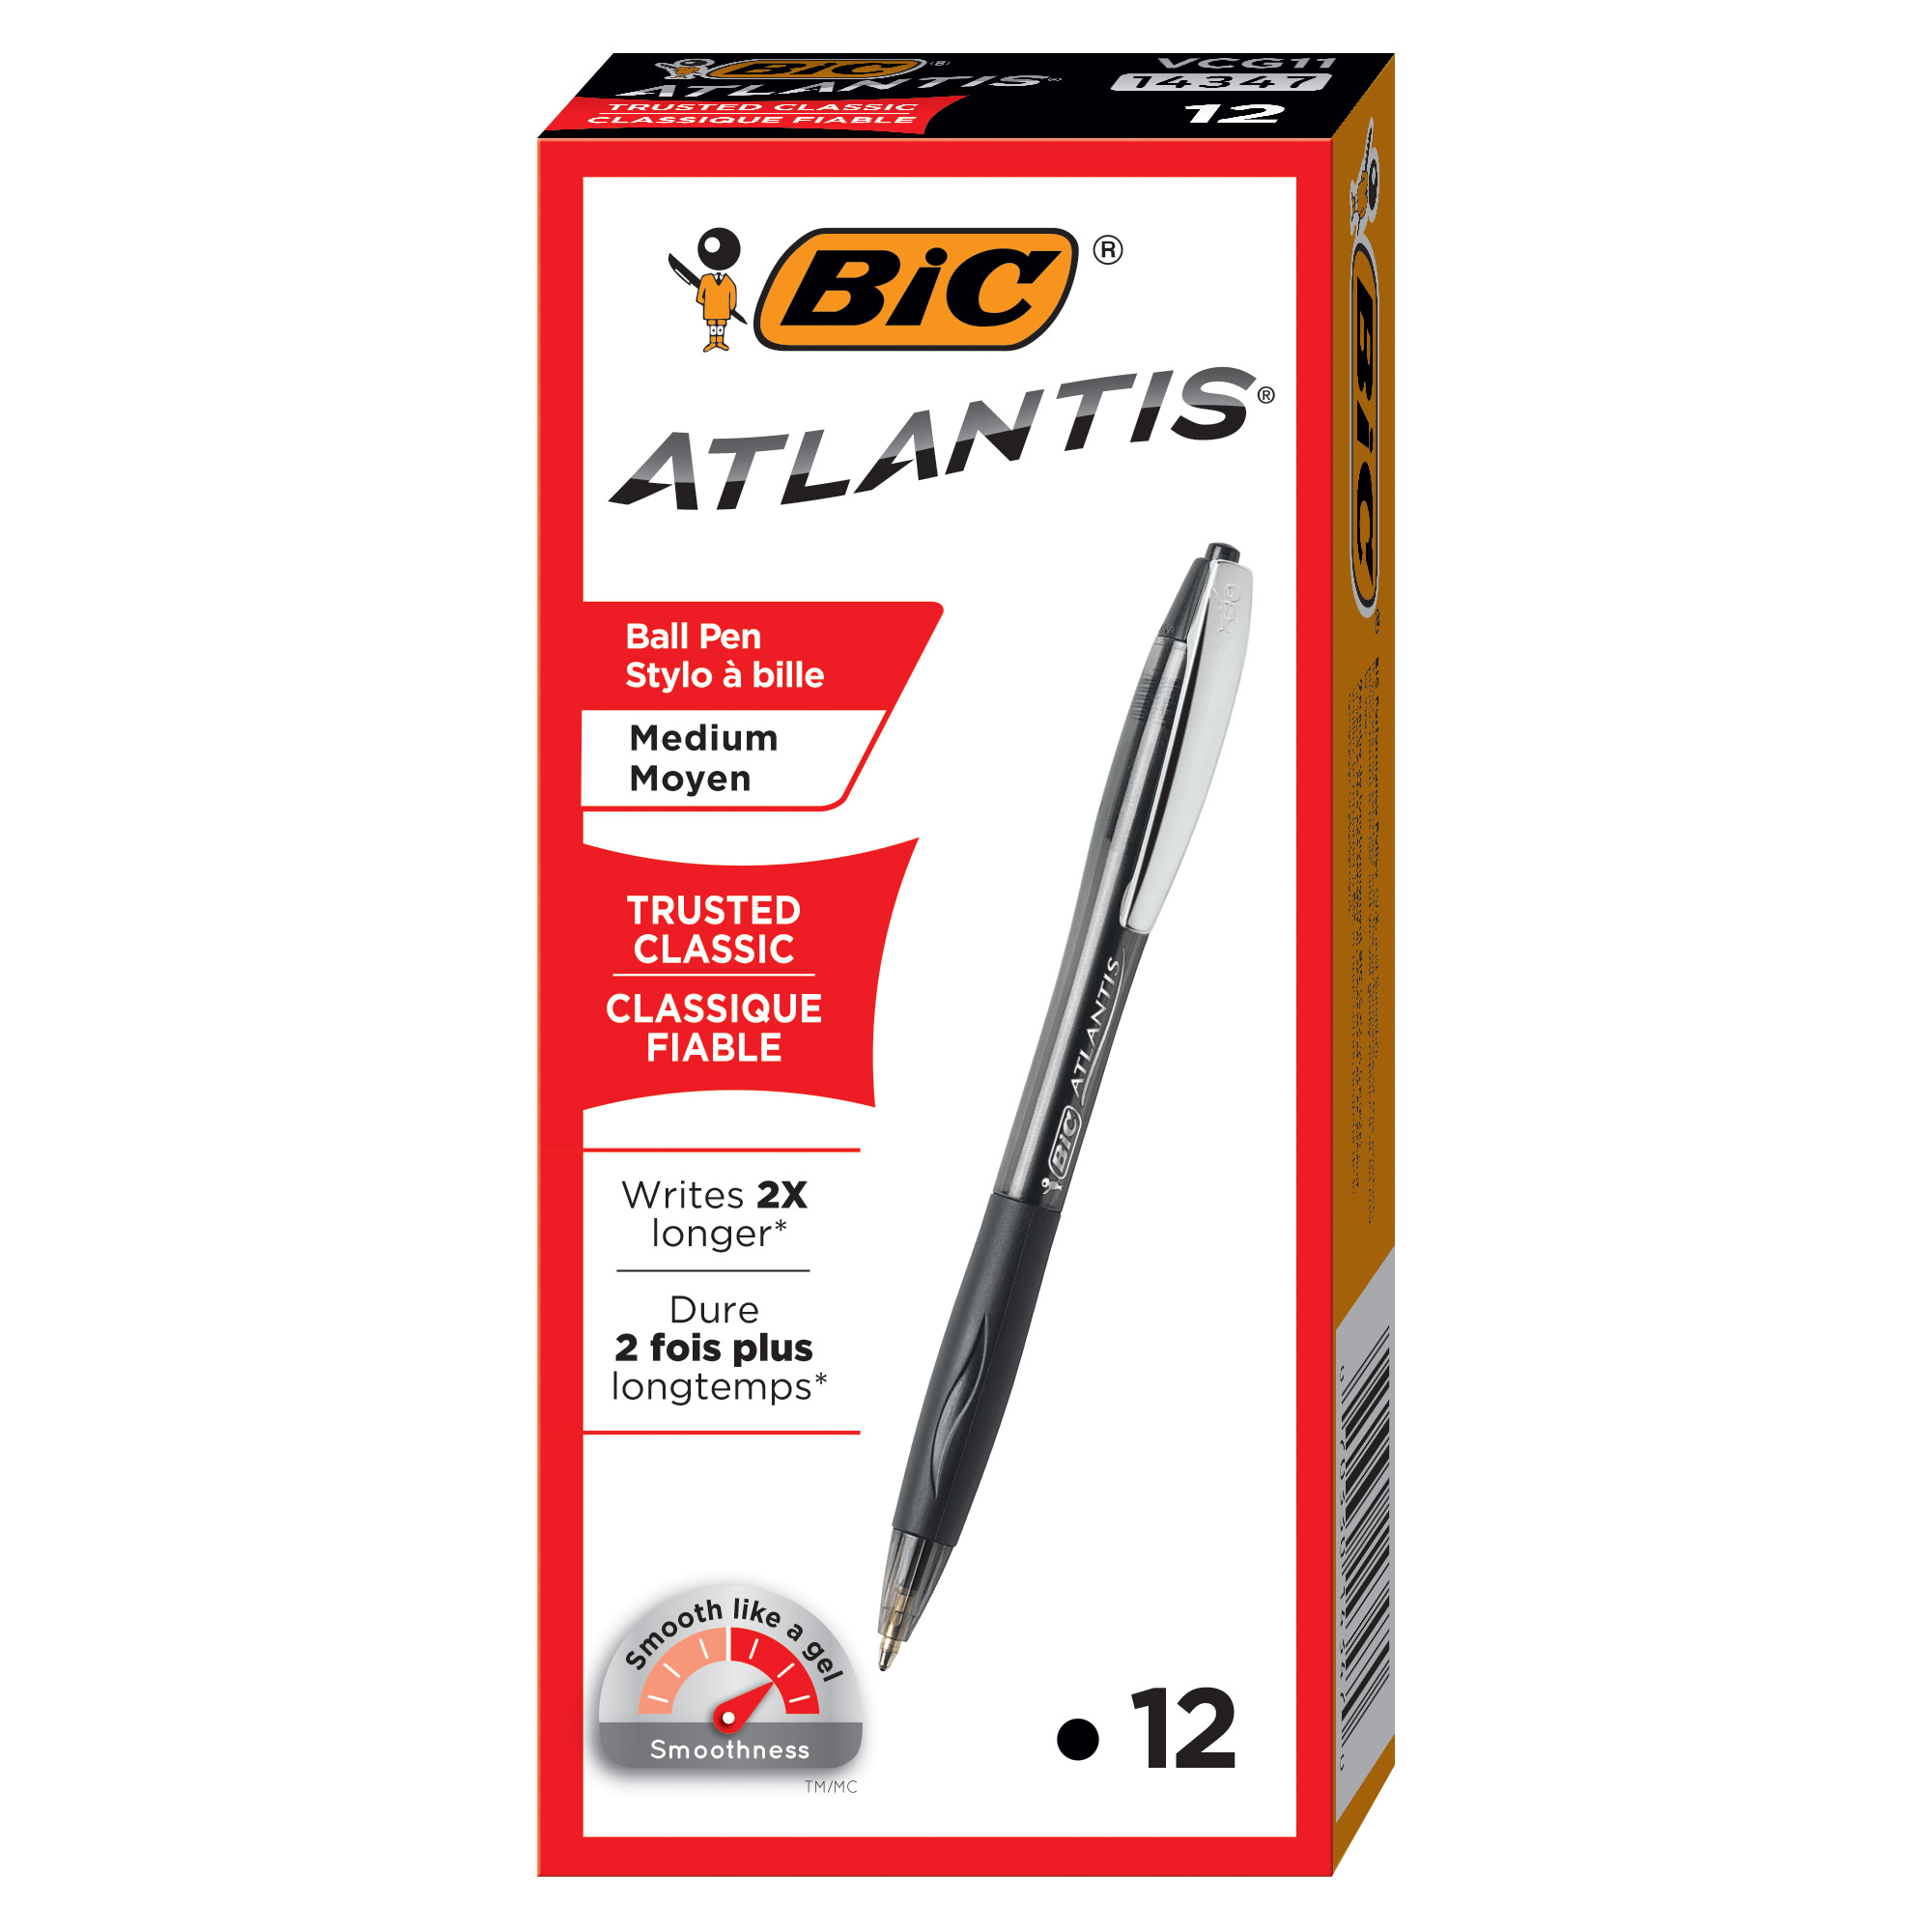 BIC Atlantis Original Retractable Ball Pen, Black, 12 Pack - image 2 of 7